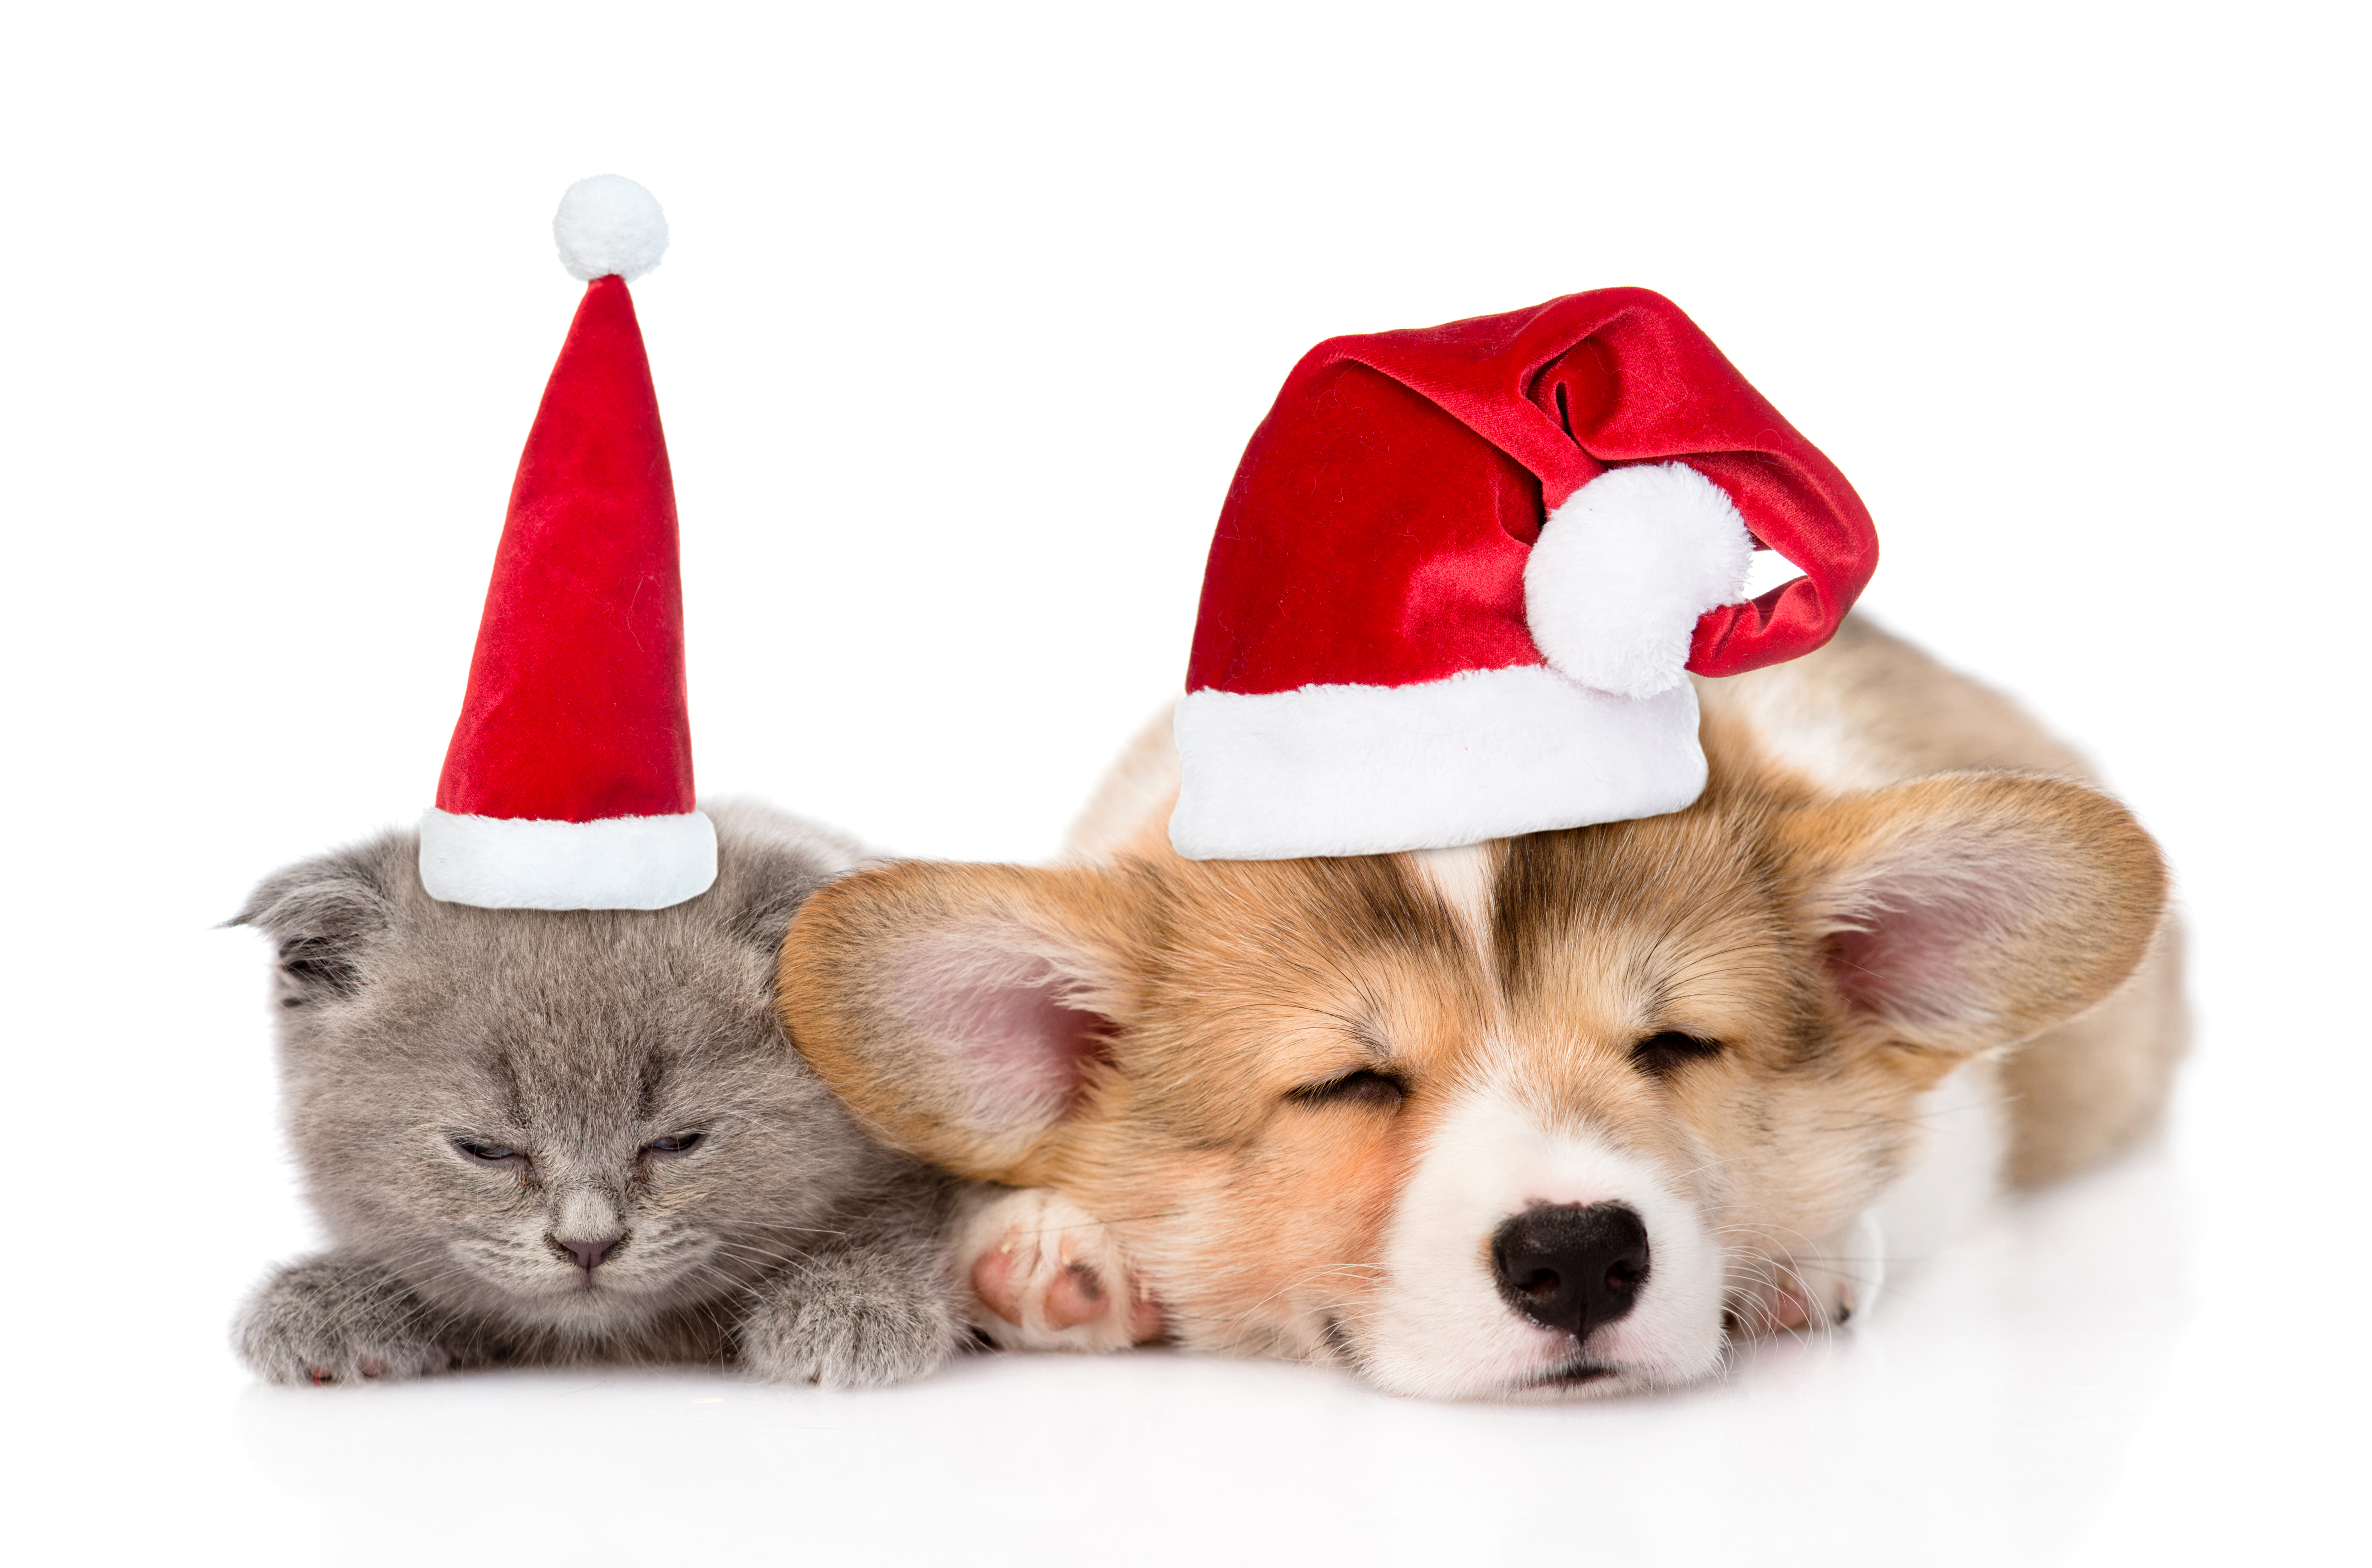 Descarga gratuita de fondo de pantalla para móvil de Animales, Gato, Perro, Dormido, Corgi, Sombrero De Santa, Perro Y Gato.